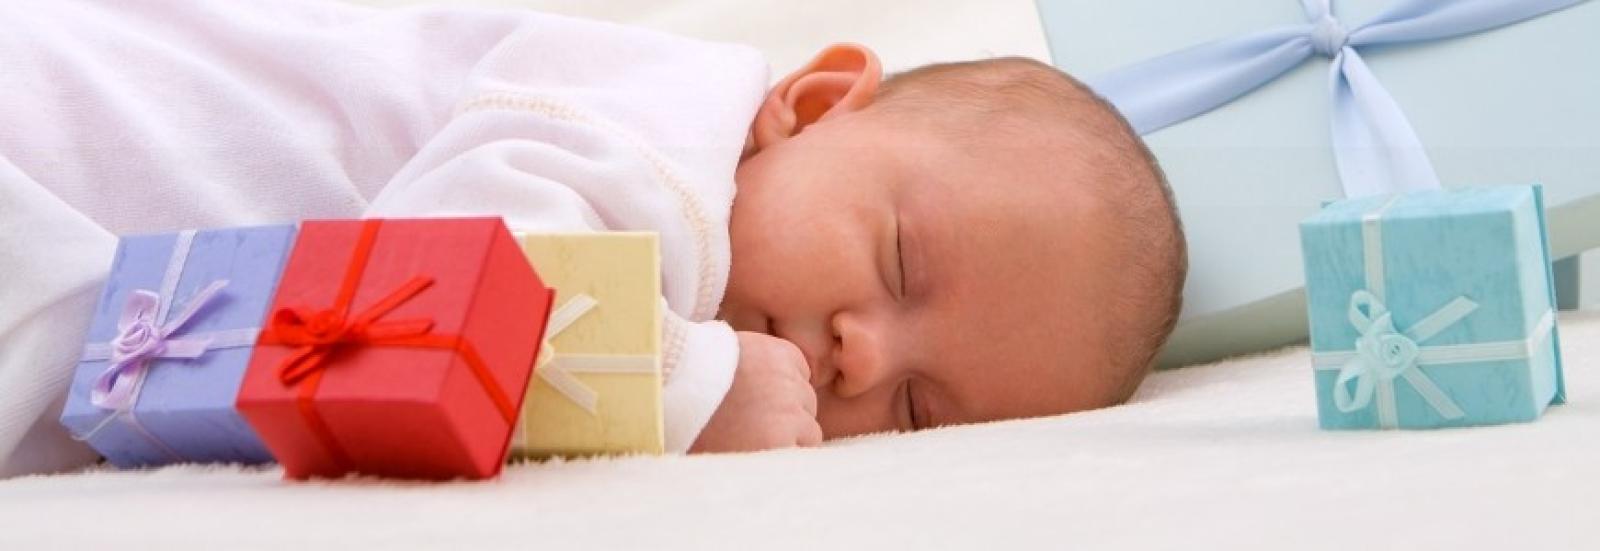 Les Essentiels pour Bébé Wesco : De la naissance à 3 mois